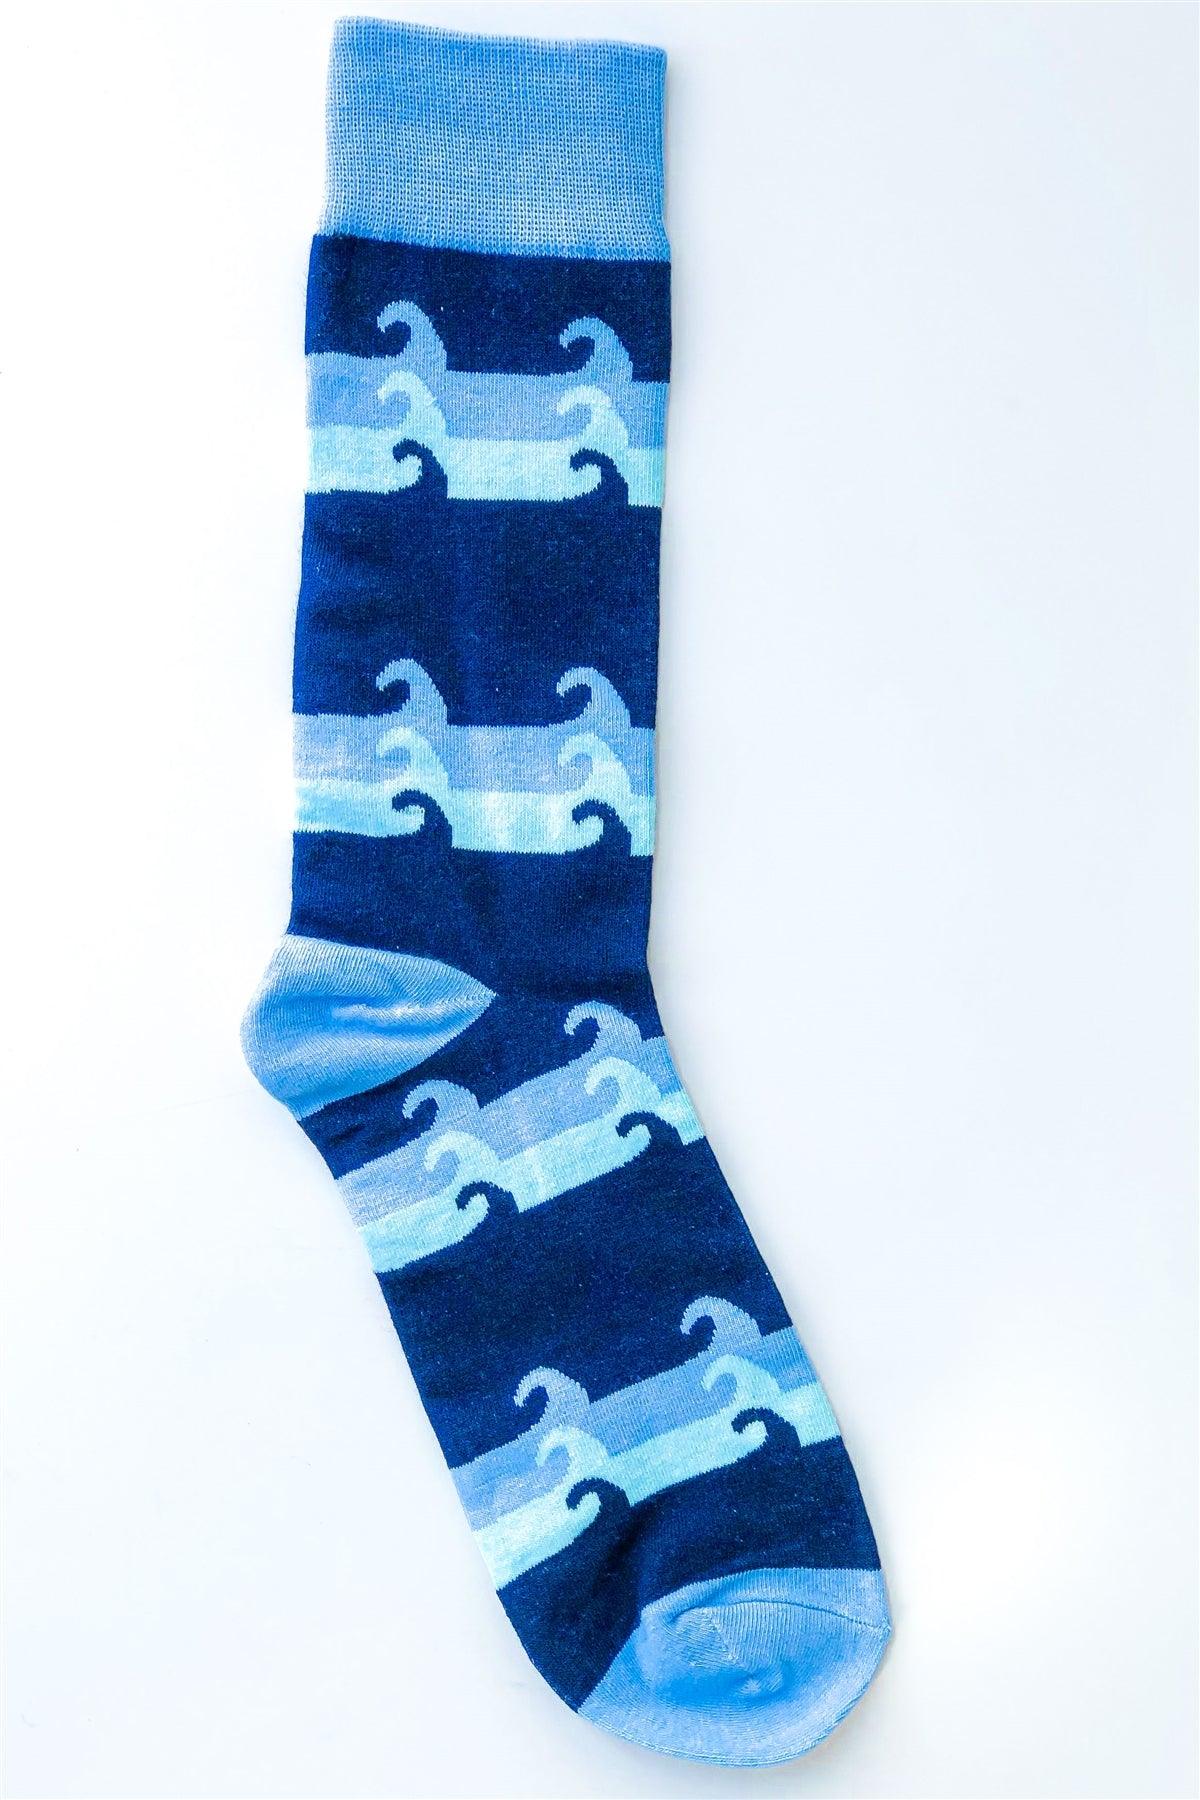 Blue Multi Wave Mid Calf Tube Socks /13 pairs